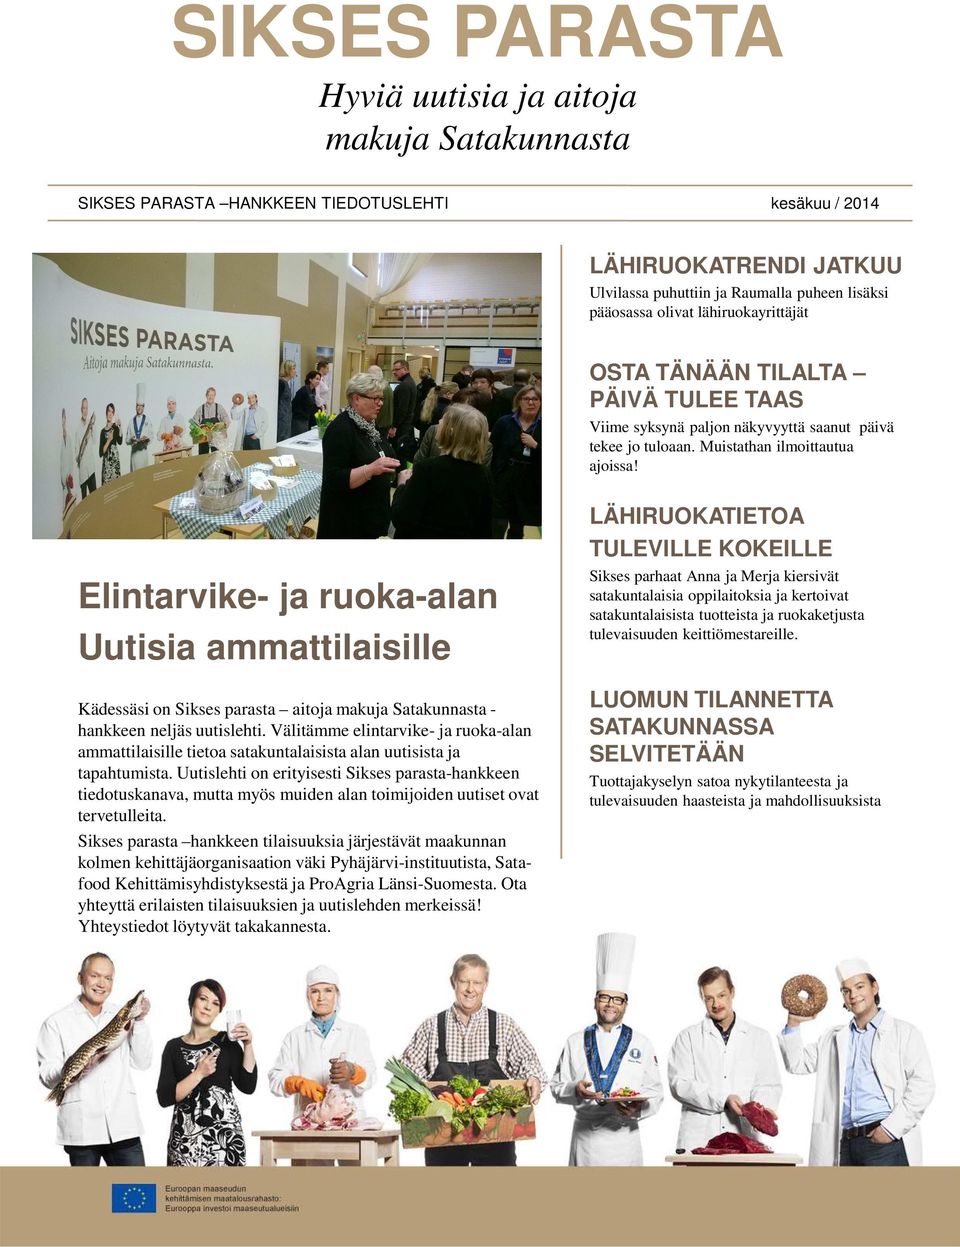 Elintarvike- ja ruoka-alan Uutisia ammattilaisille Kädessäsi on Sikses parasta aitoja makuja Satakunnasta - hankkeen neljäs uutislehti.